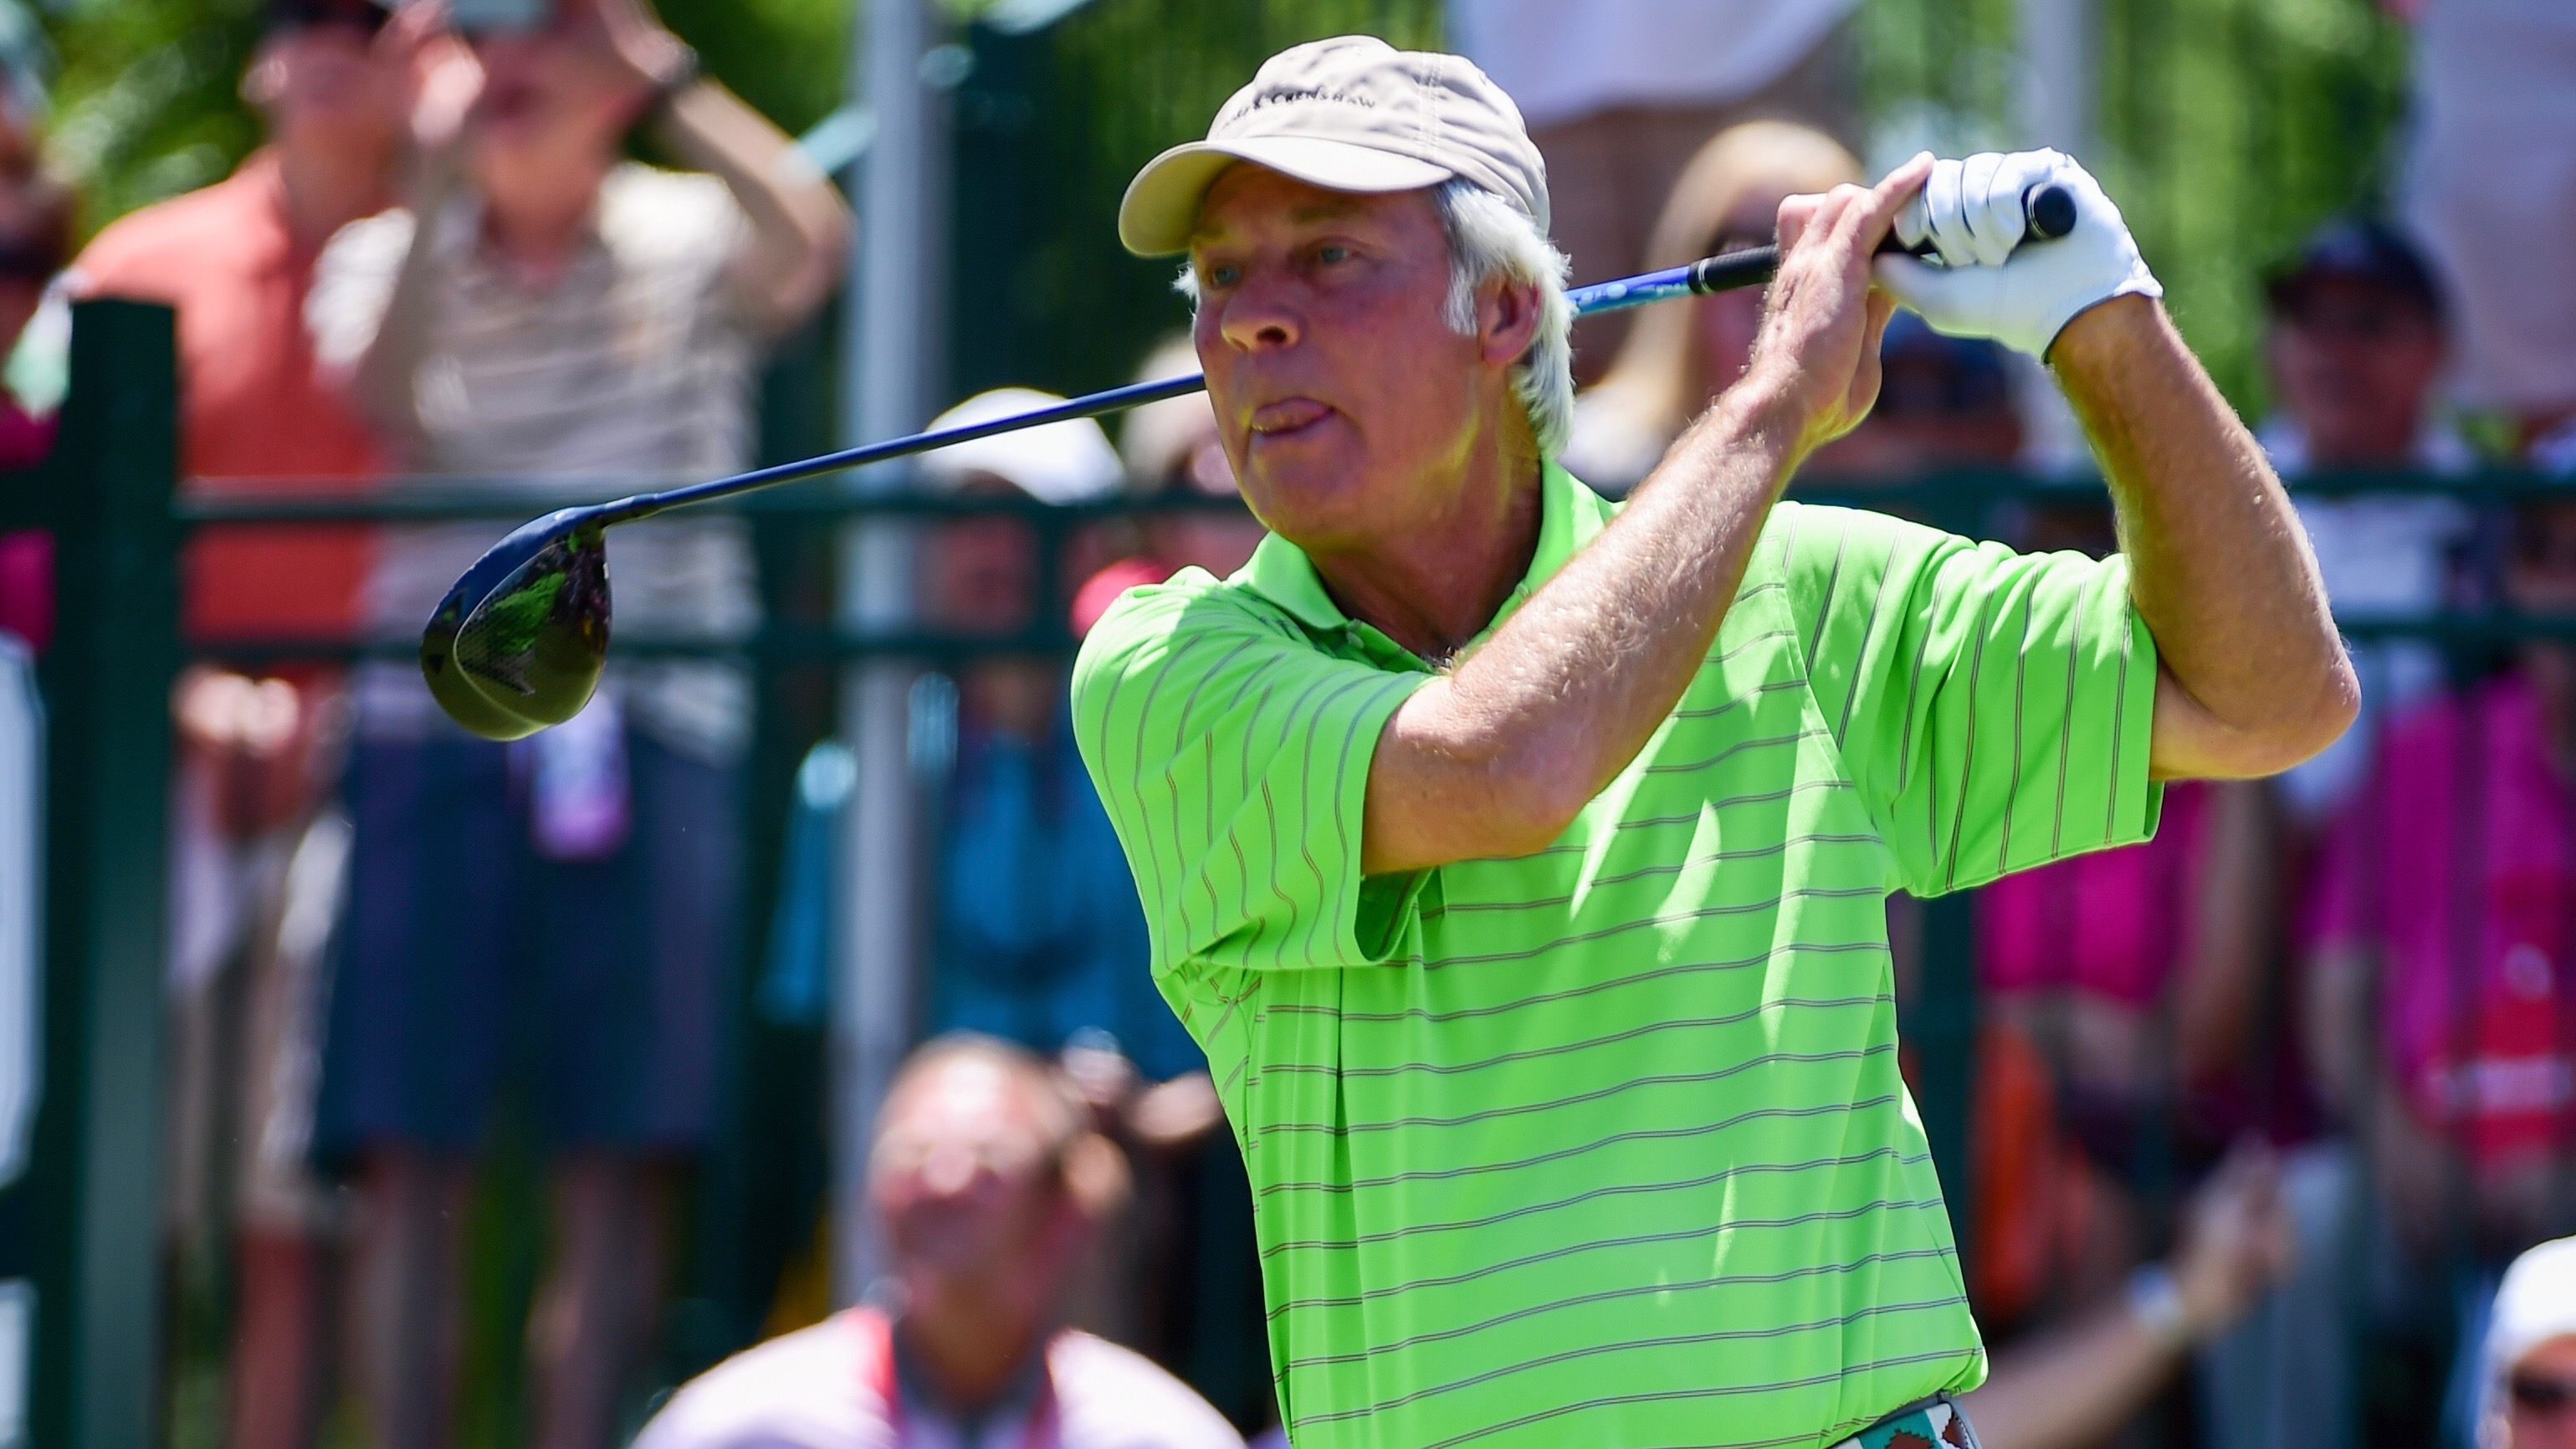 Ben Crenshaw, 69, spielt auf der Champions Tour und ist zweifacher Major-Sieger.